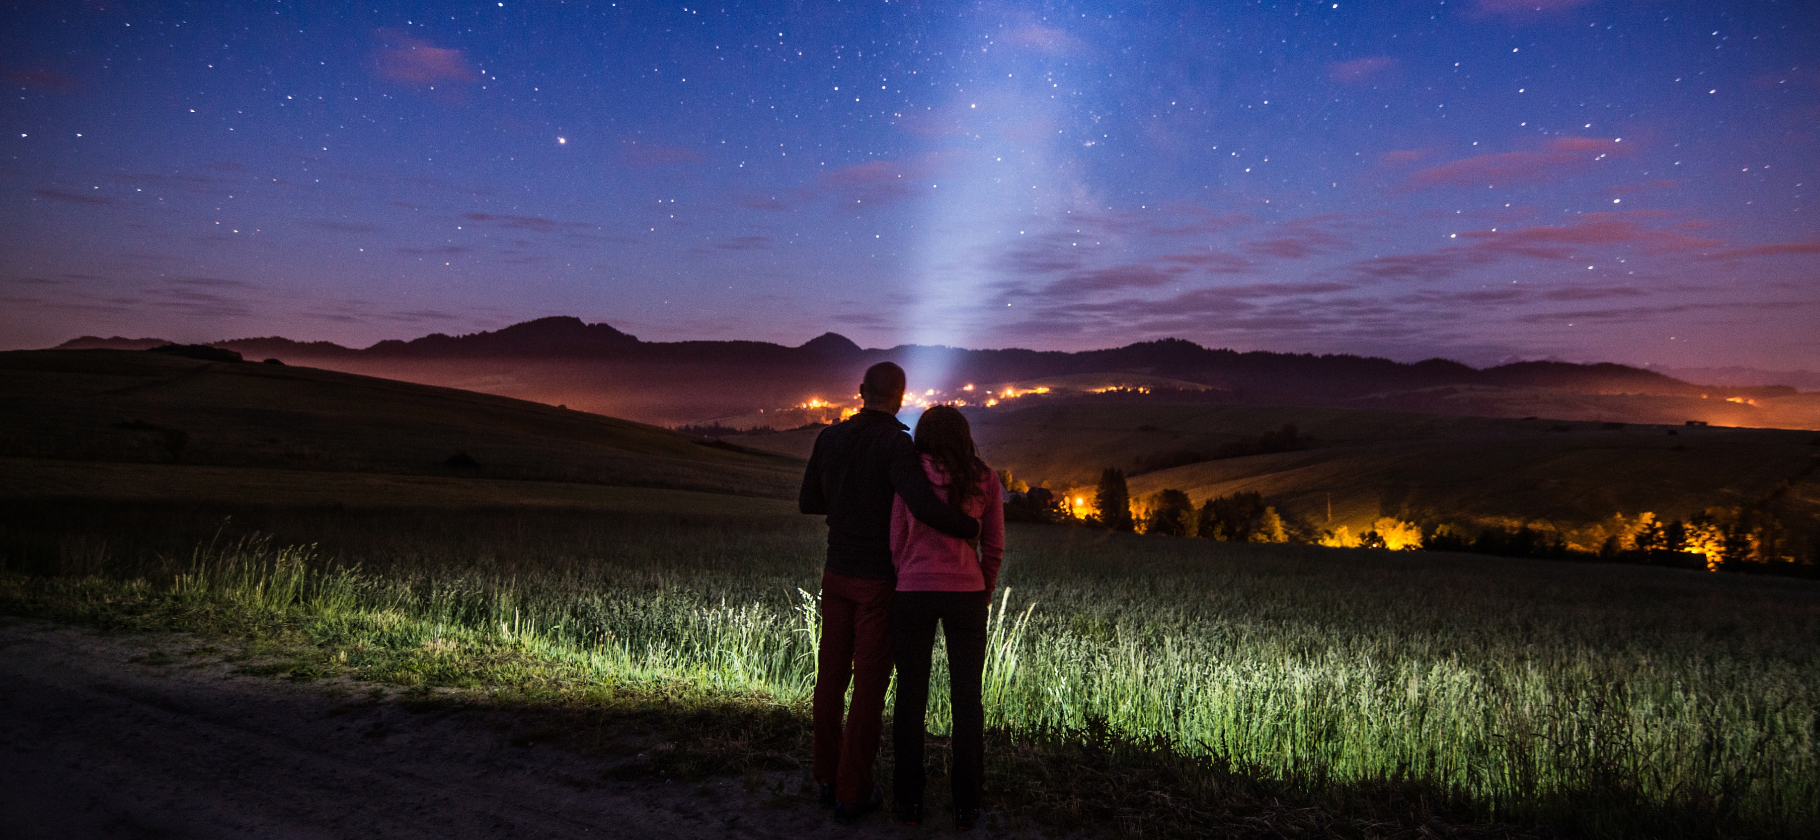 «Потрогать метеорит и целоваться под звездами»: 10 идей необычных свиданий